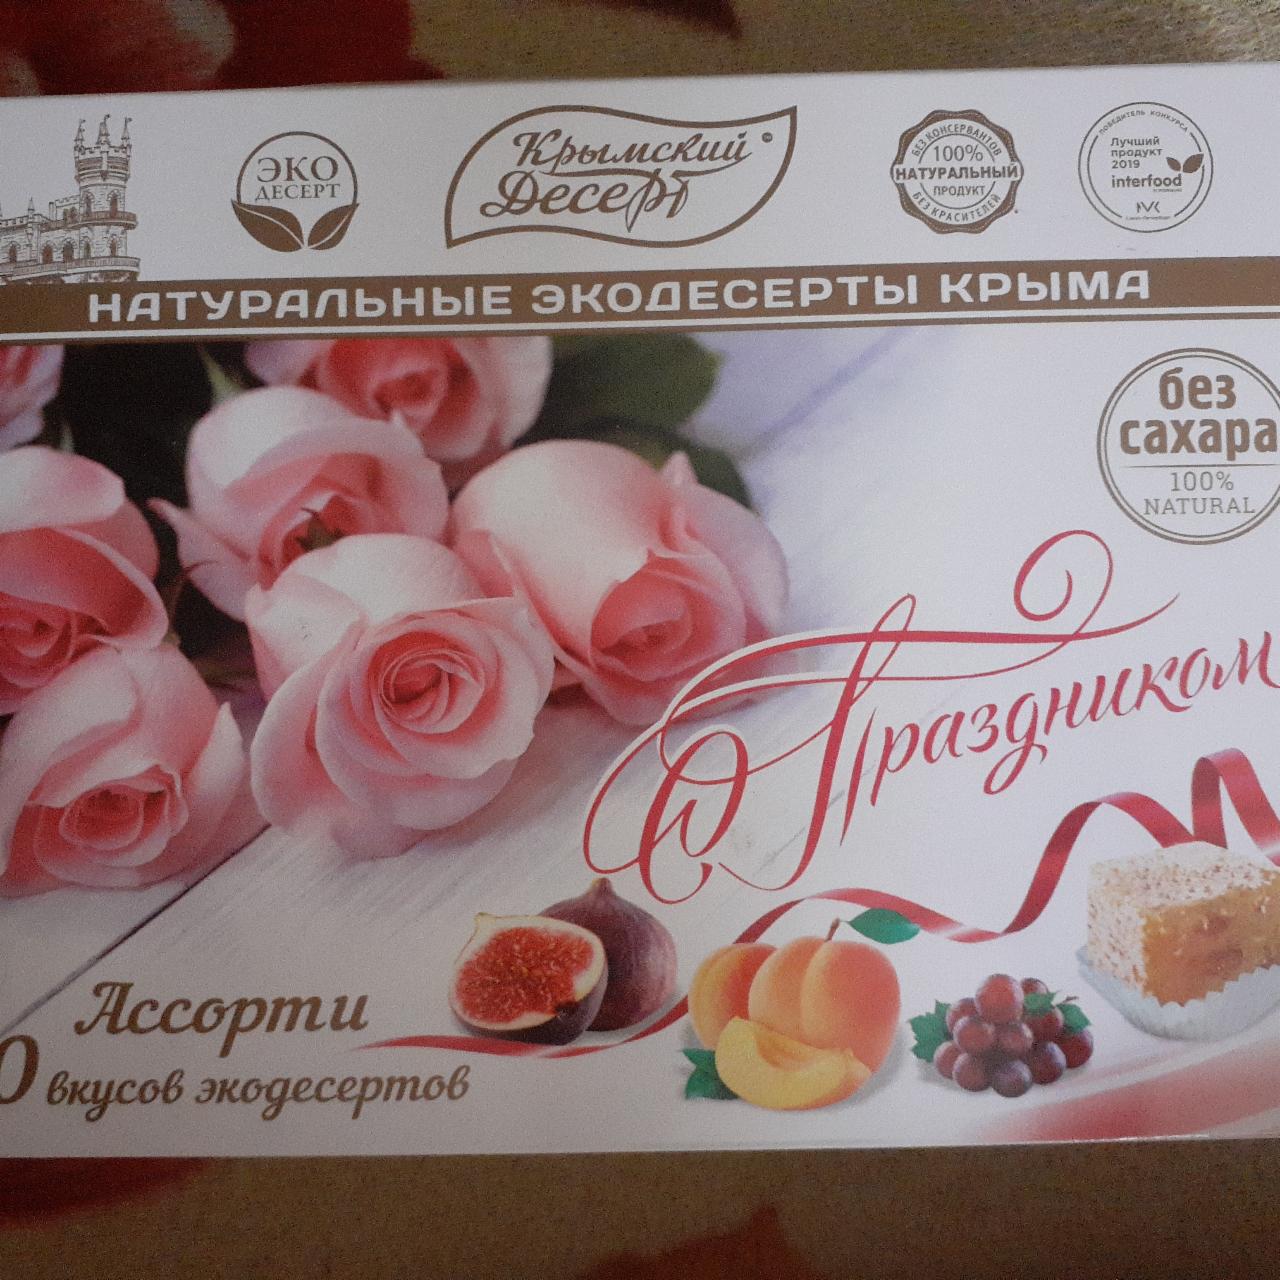 Фото - натуральные экодесерты крыма ассорти без сахара Крымский десерт